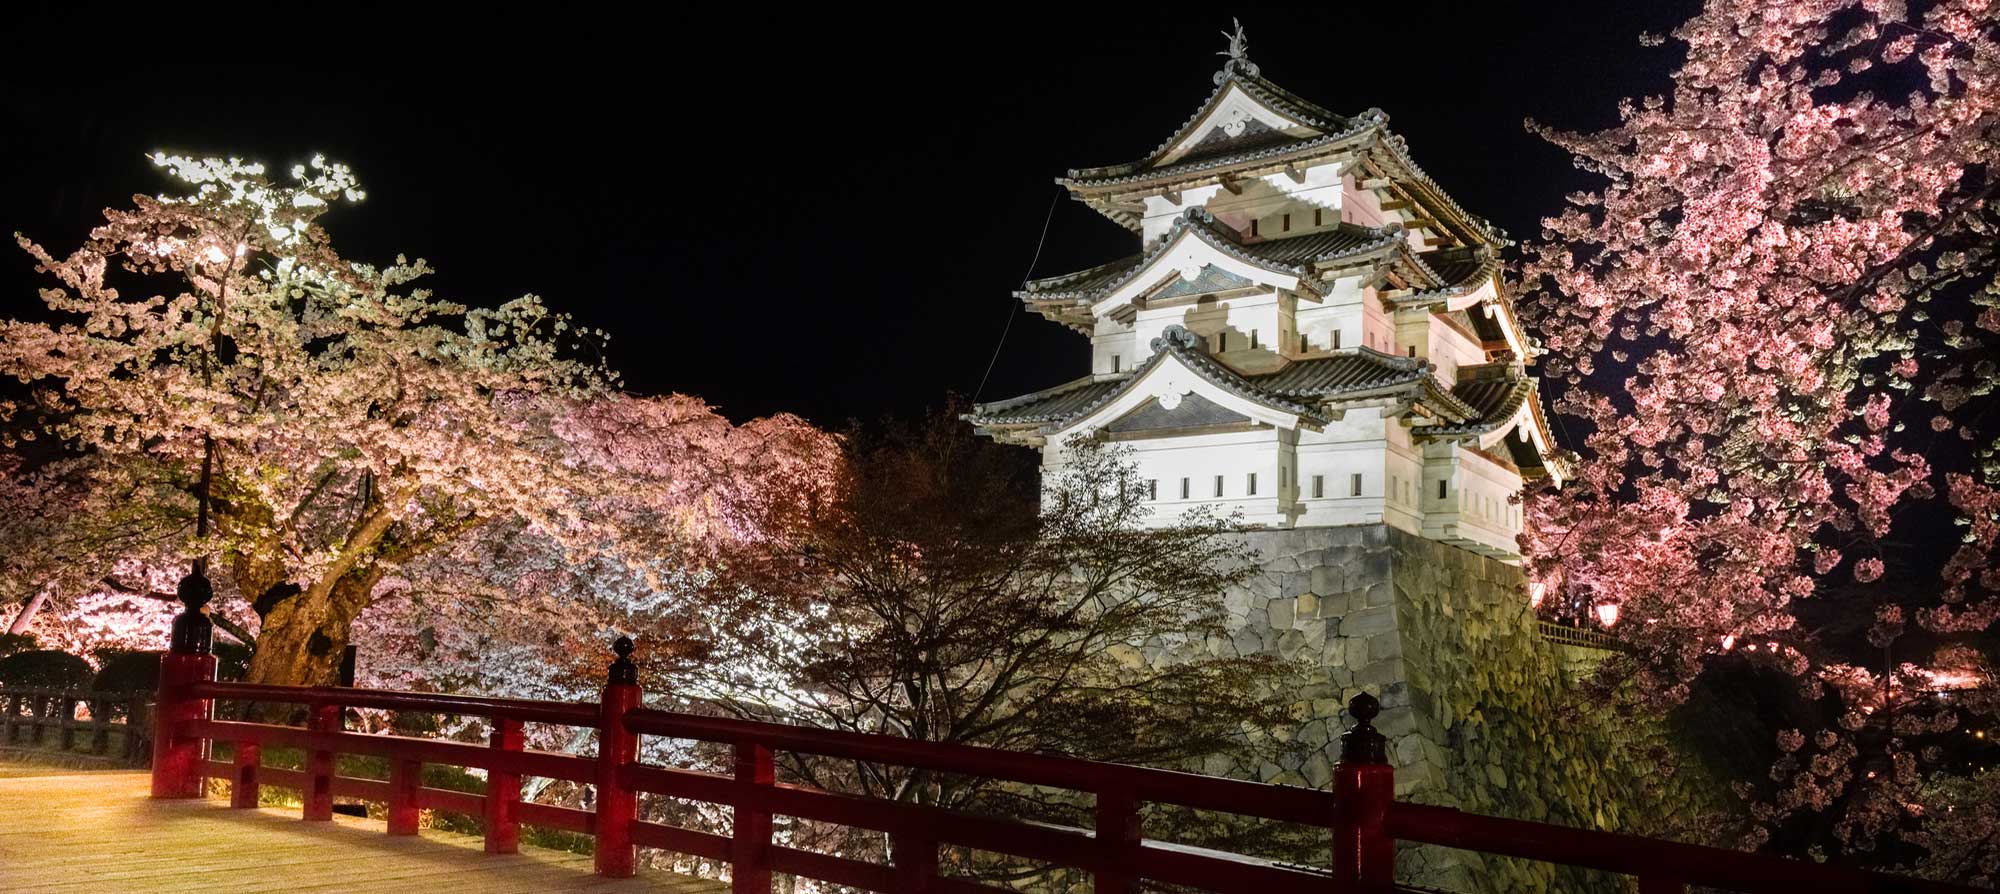 Вечерний вид высвечиваемой иллюминацией башни замка Хиросаки-дзё в городе Хиросаки, префектура Аомори, на фоне цветущей сакуры